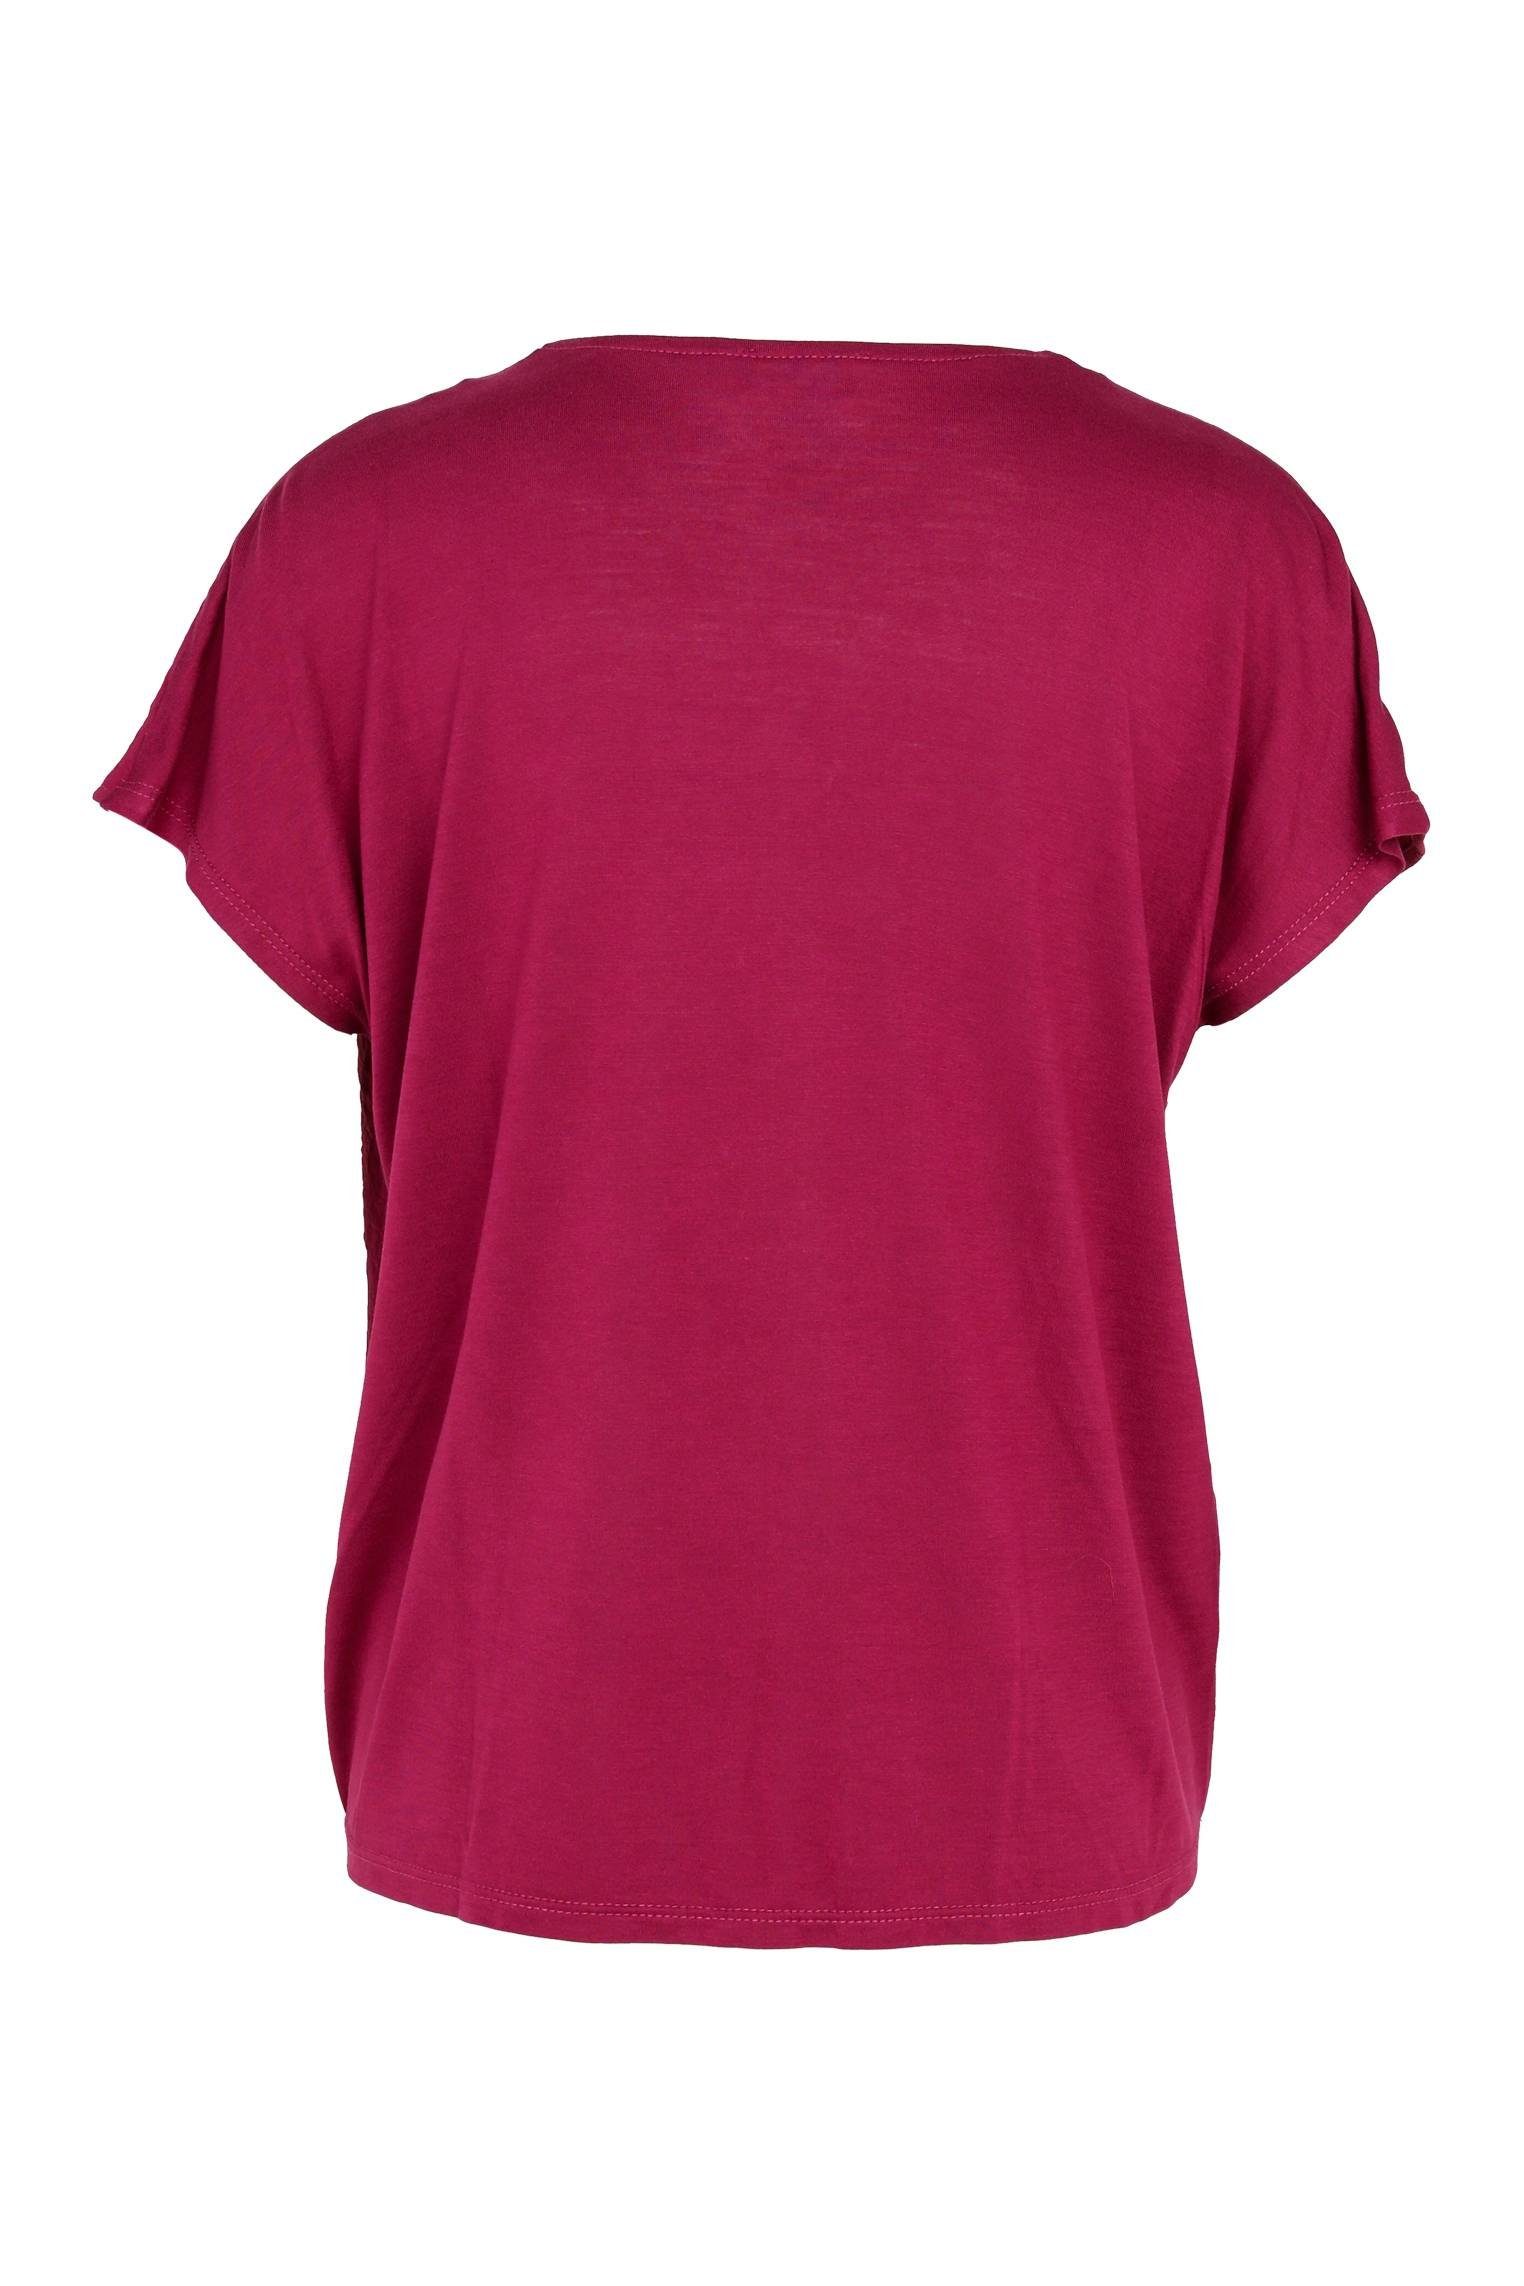 Cassis T-Shirt Unifarbenes Mit T-Shirt Kopf Unten